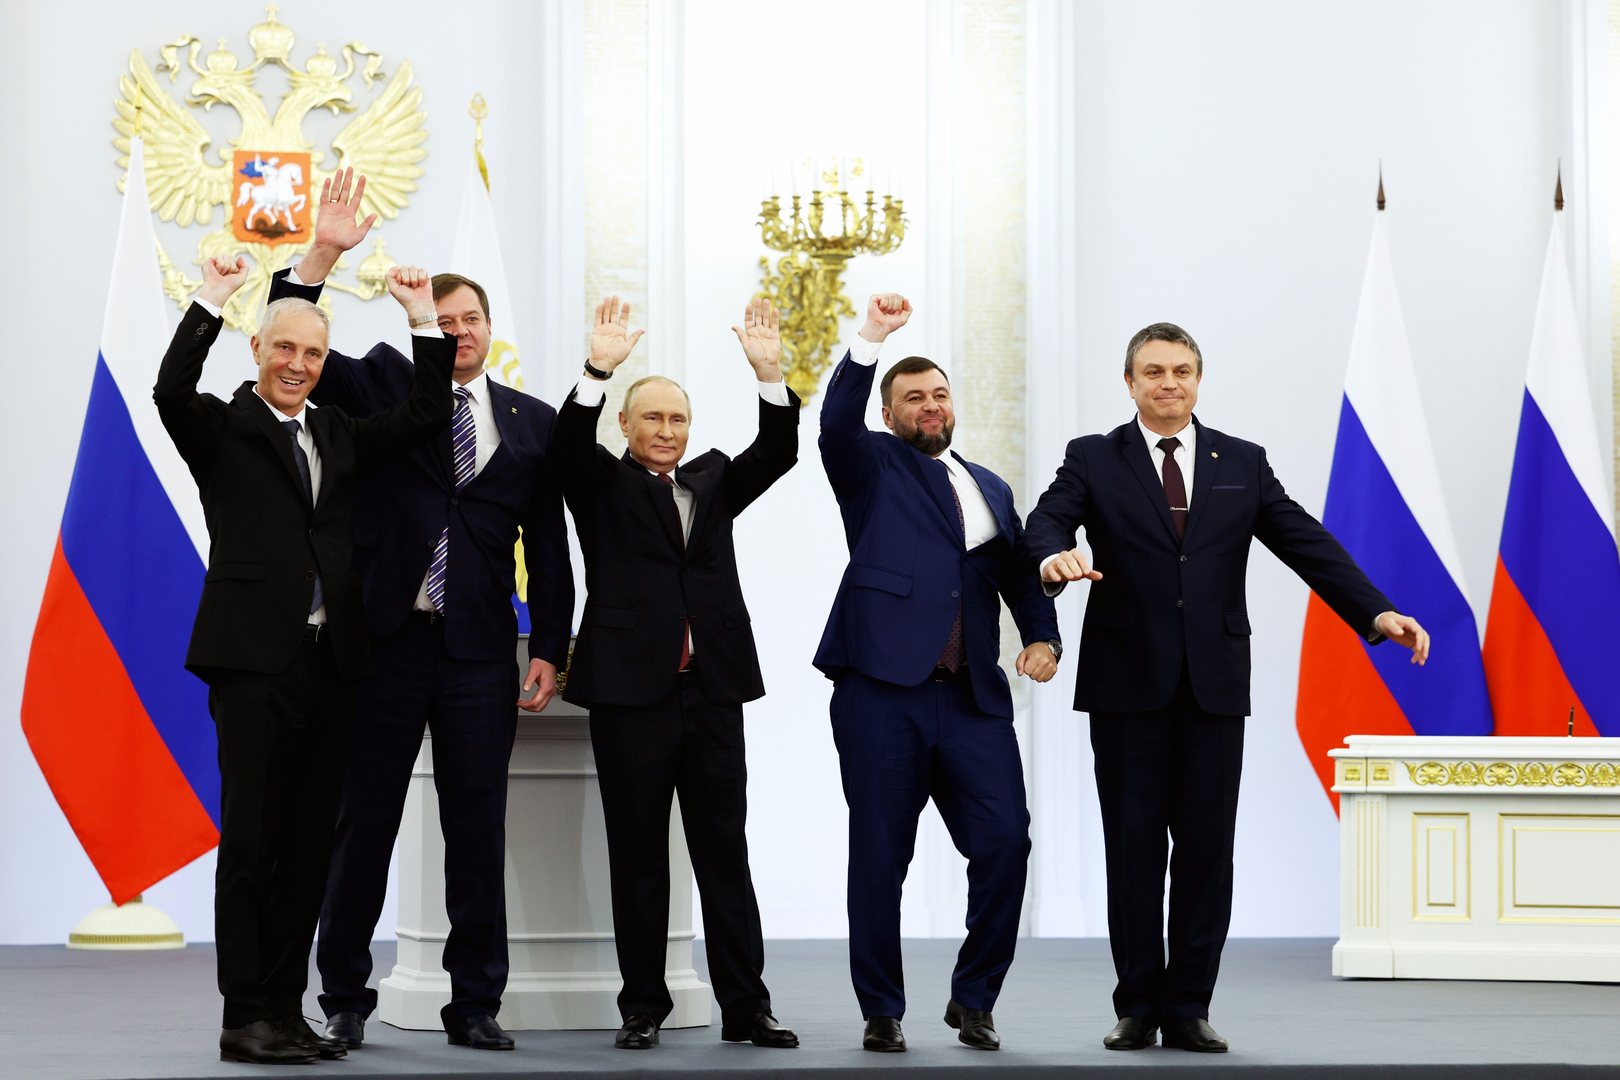 النص الكامل لخطاب فلاديمير بوتين بمناسبة انضمام دونيتسك ولوغانسك وزابوروجيه وخيرسون إلى روسيا